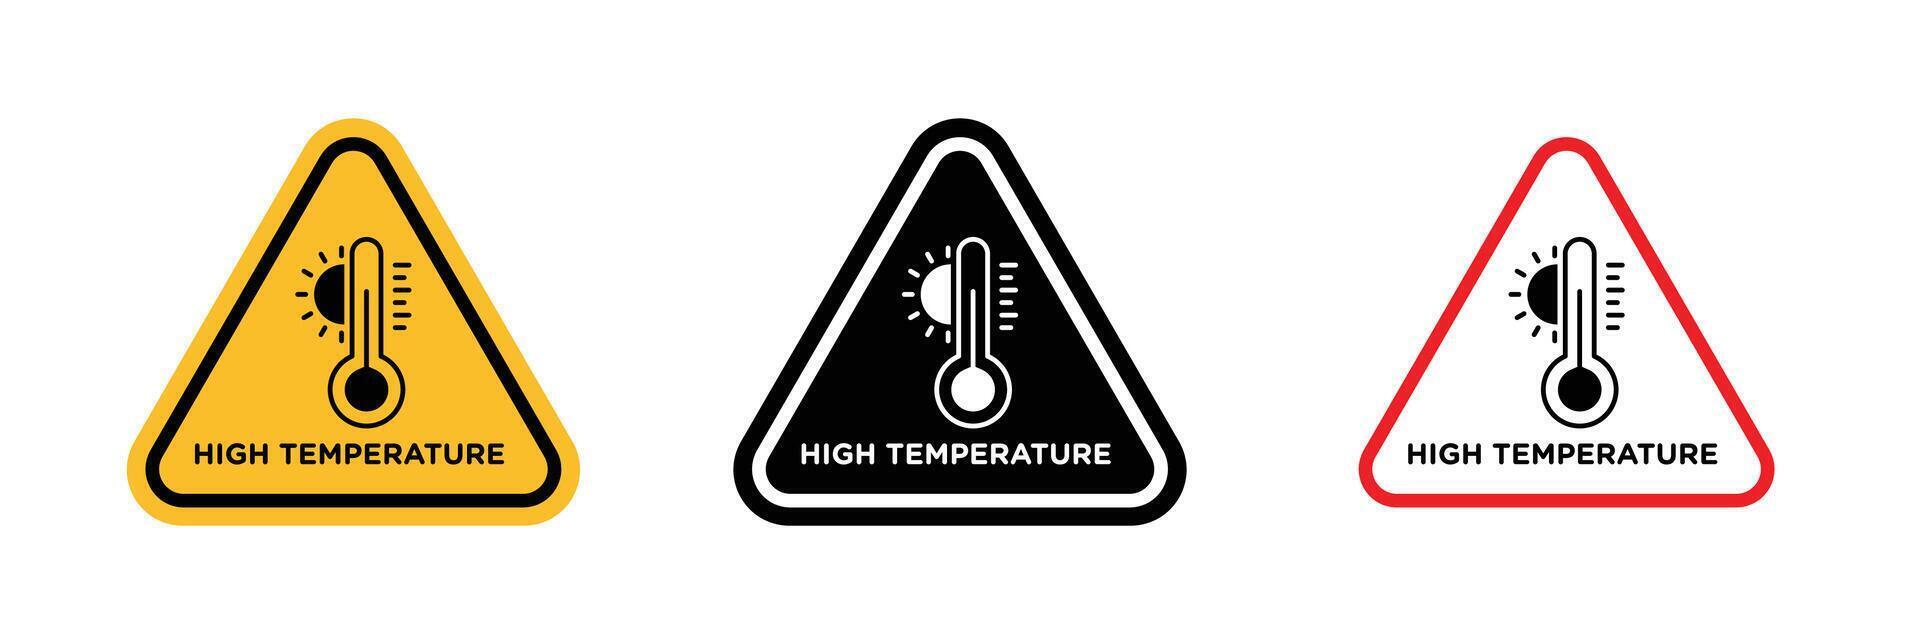 Alto temperatura Atenção placa vetor